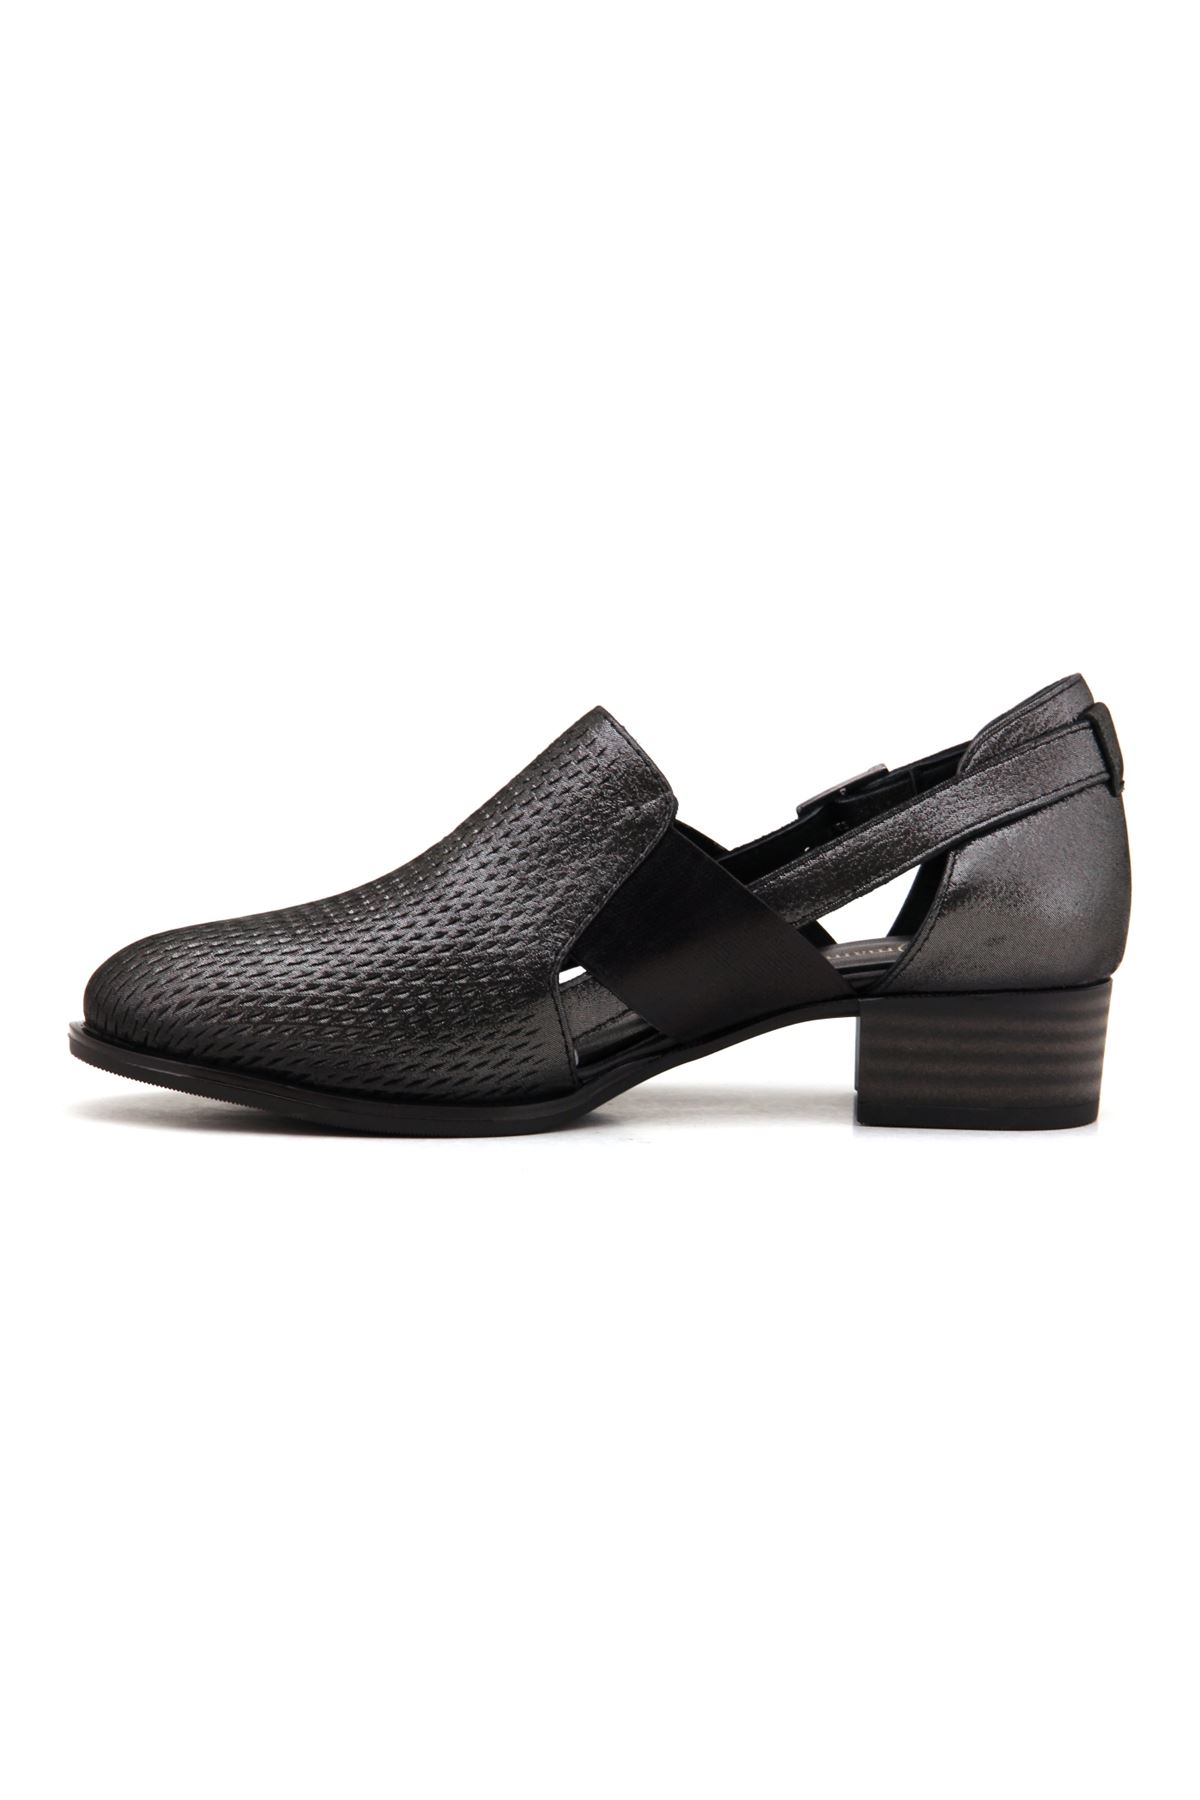 Mammamia D22YA-490 Hakiki Deri Kadın Ayakkabı - Siyah Çelik